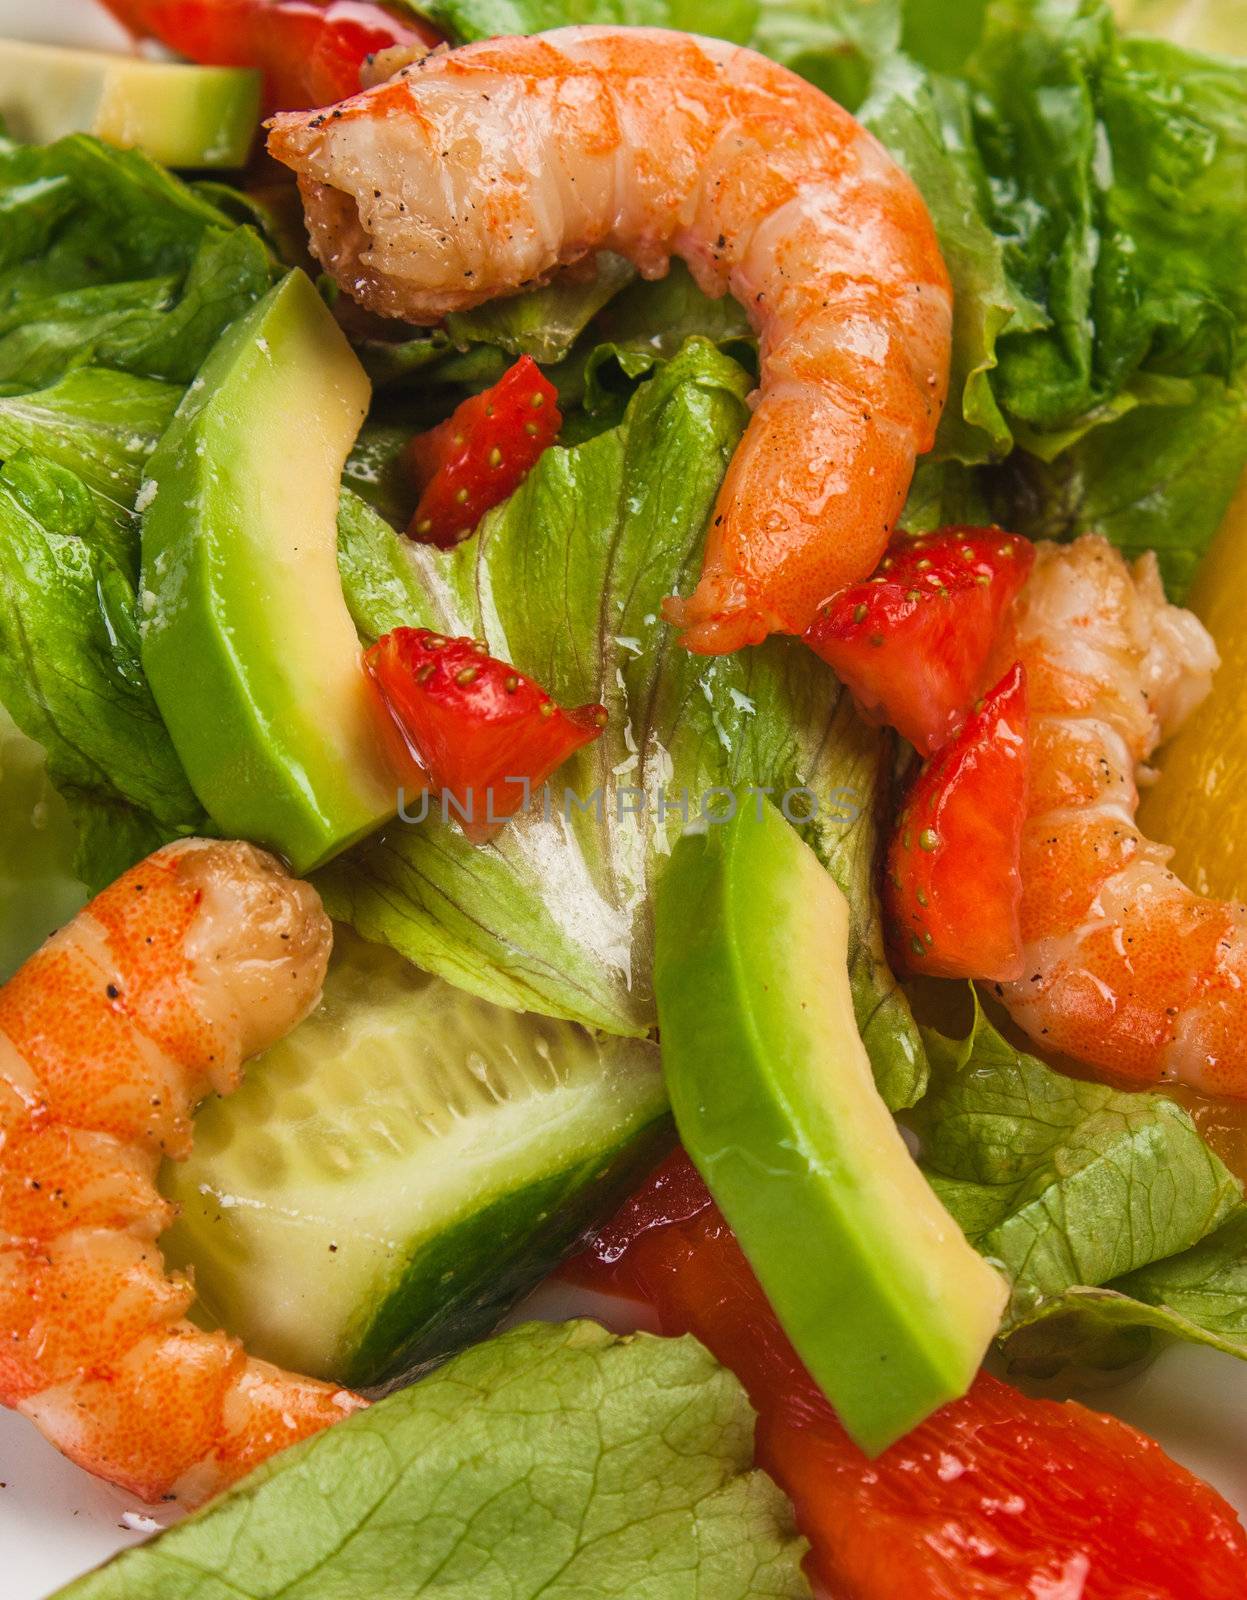 Salad of vegetables and shrimp